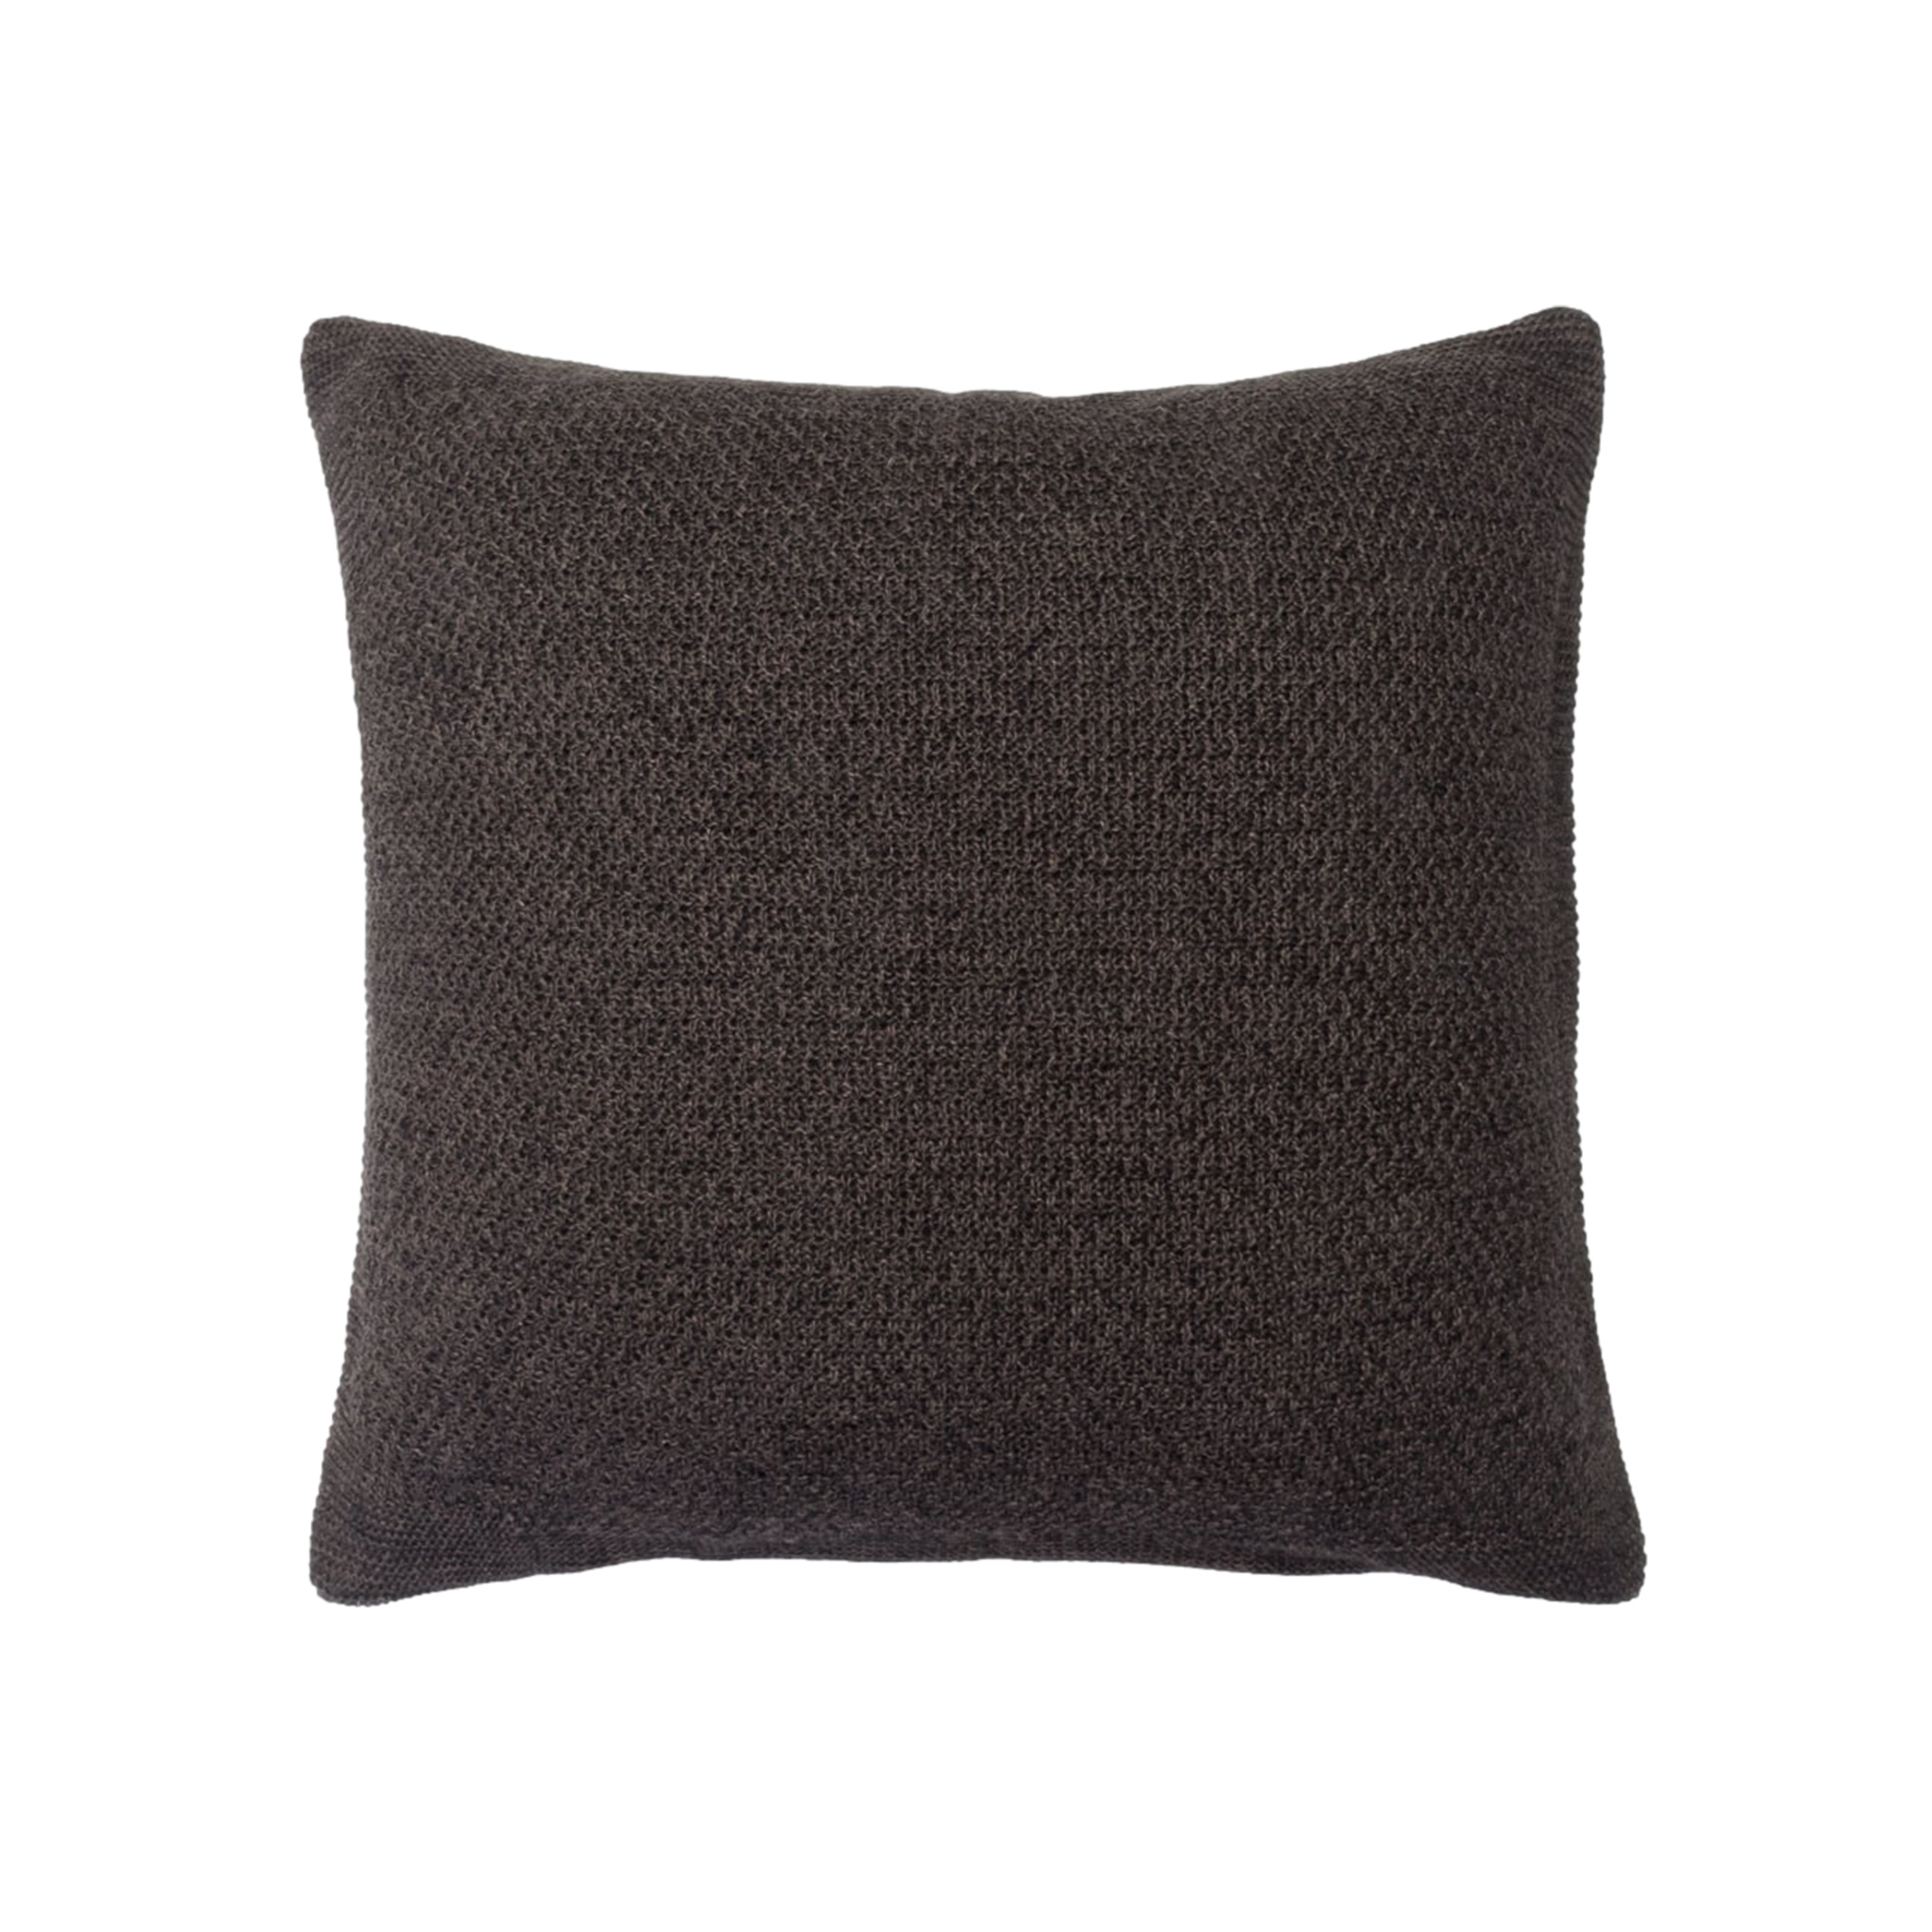 Lanier Pillow in Asphalt